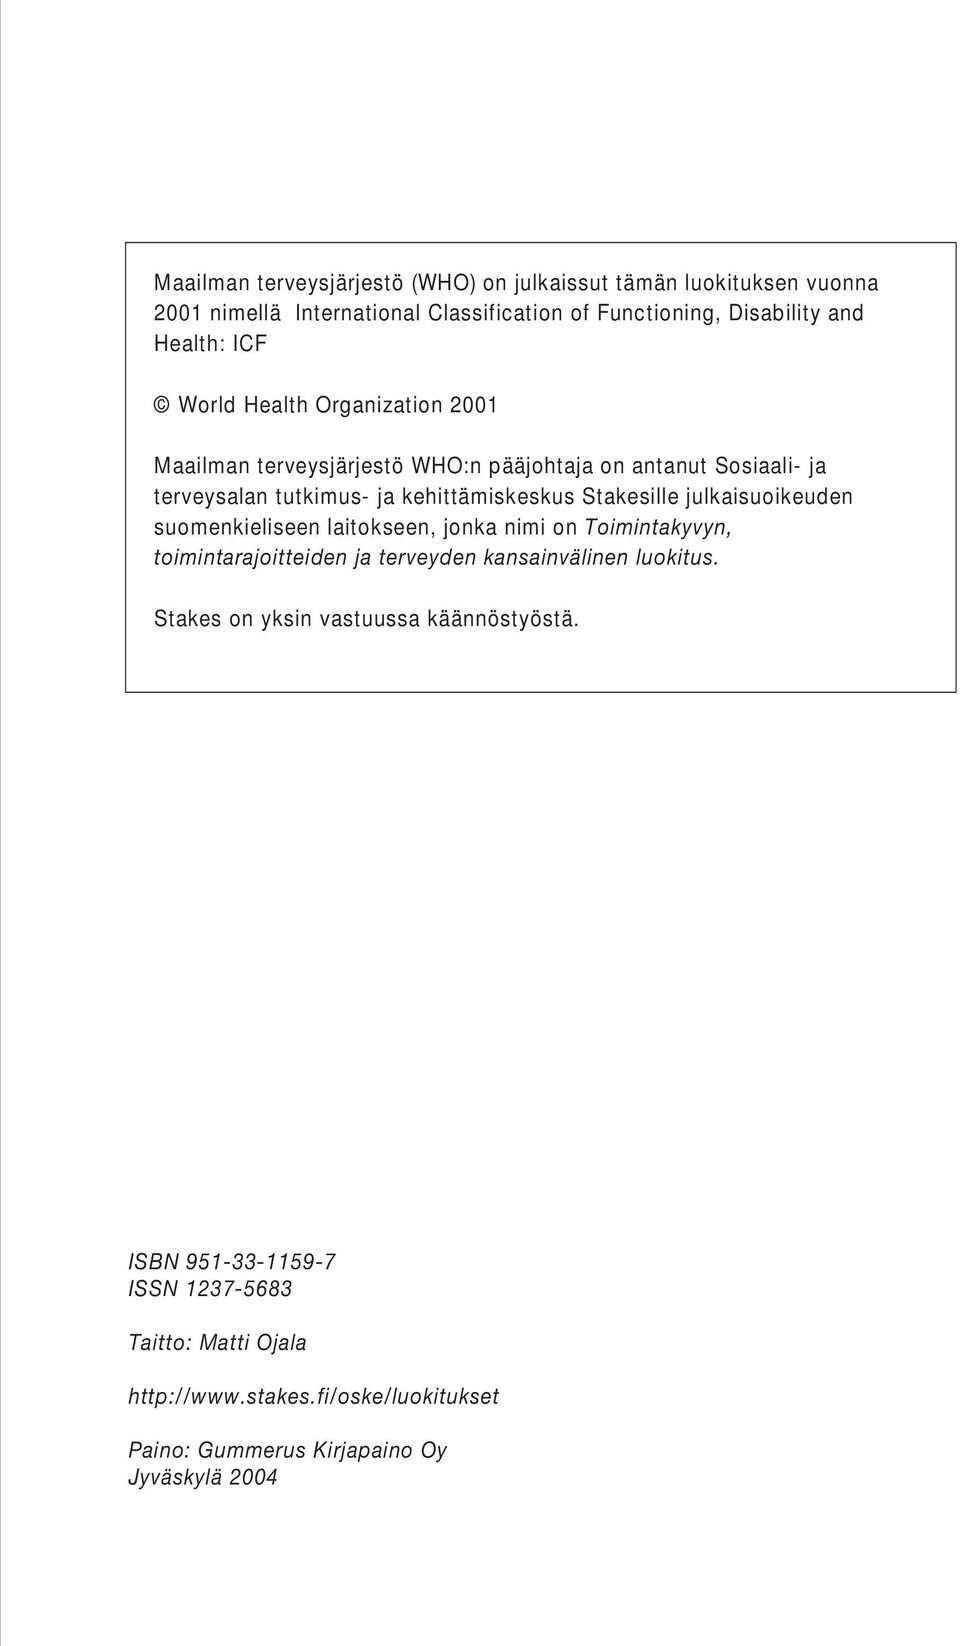 julkaisuoikeuden suomenkieliseen laitokseen, jonka nimi on Toimintakyvyn, toimintarajoitteiden ja terveyden kansainvälinen luokitus.